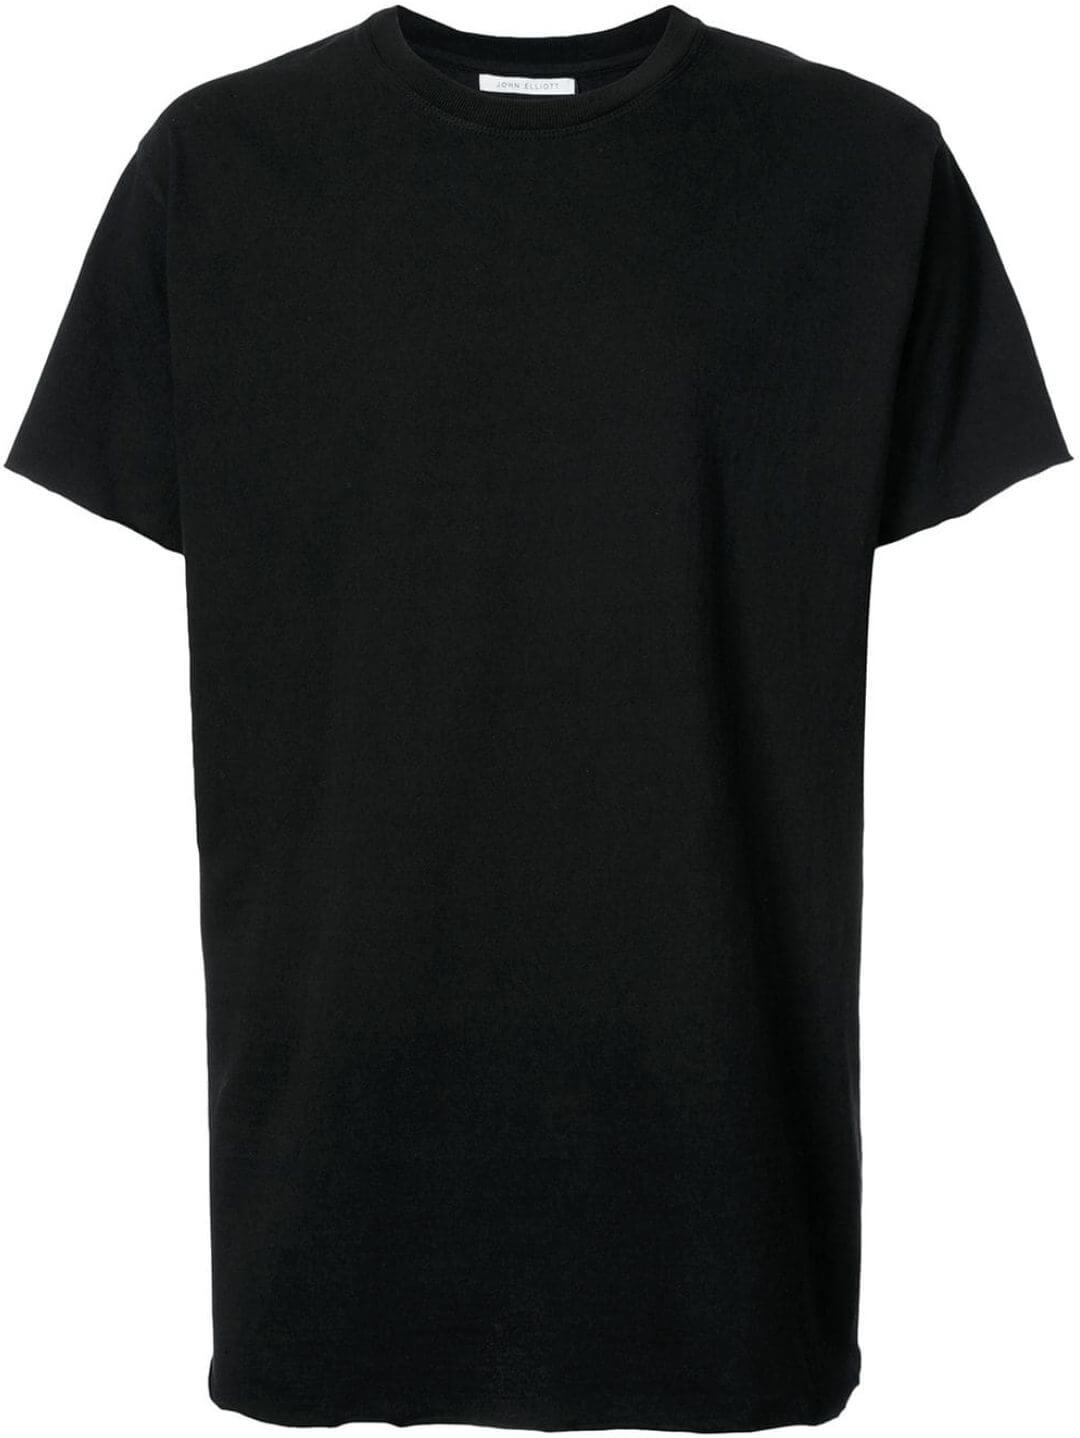 黒tシャツ コーデ メンズ特集 21最新 メンズファッションメディア Otokomae 男前研究所